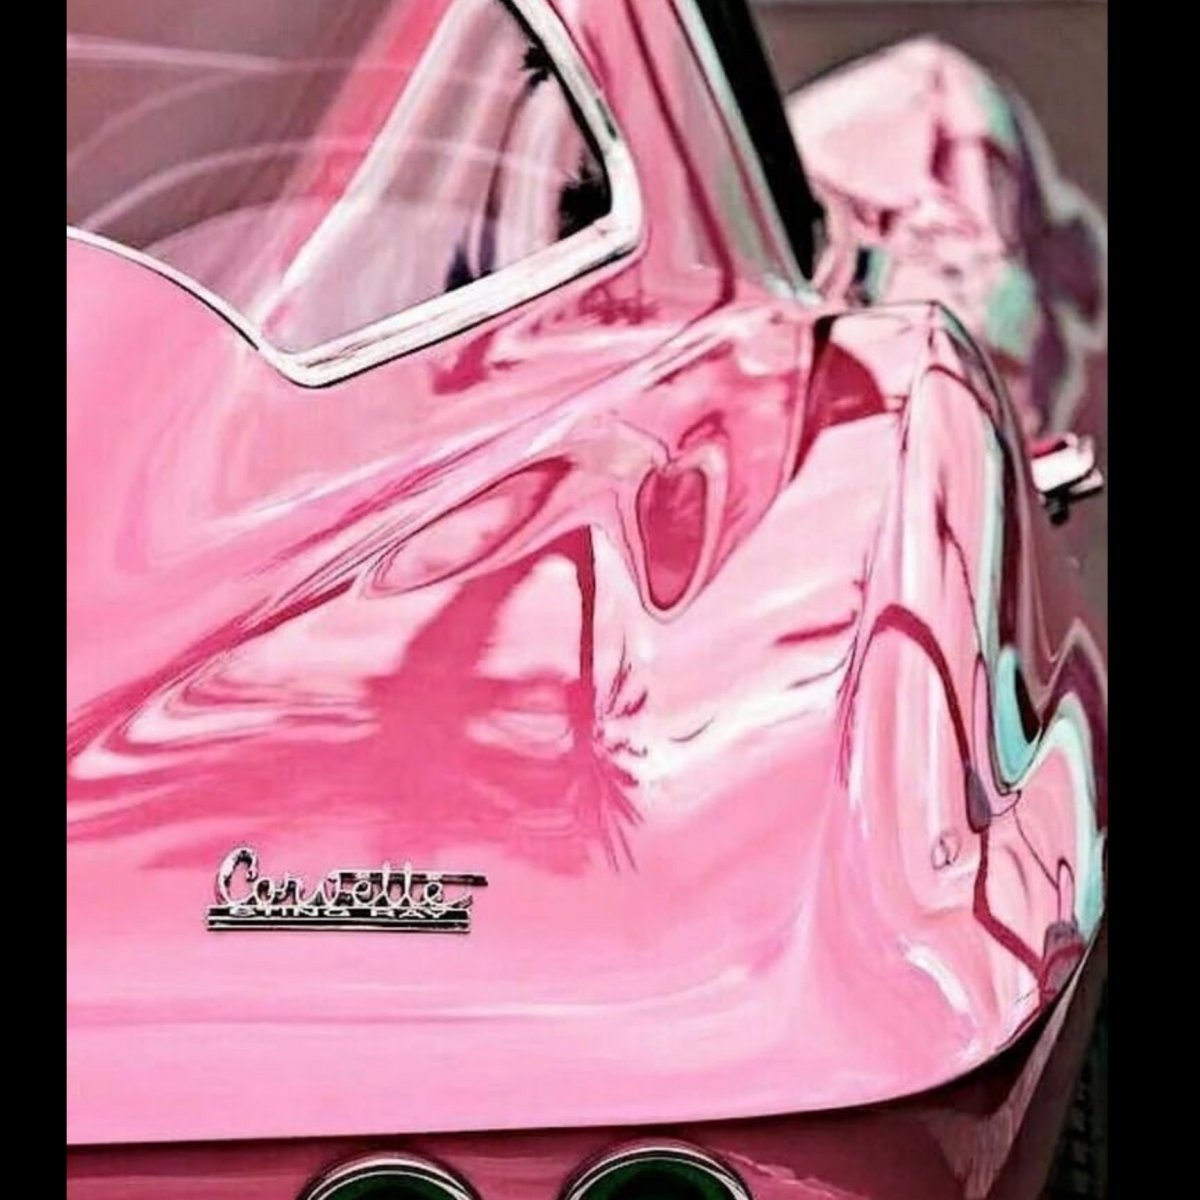 Машина розового цвета